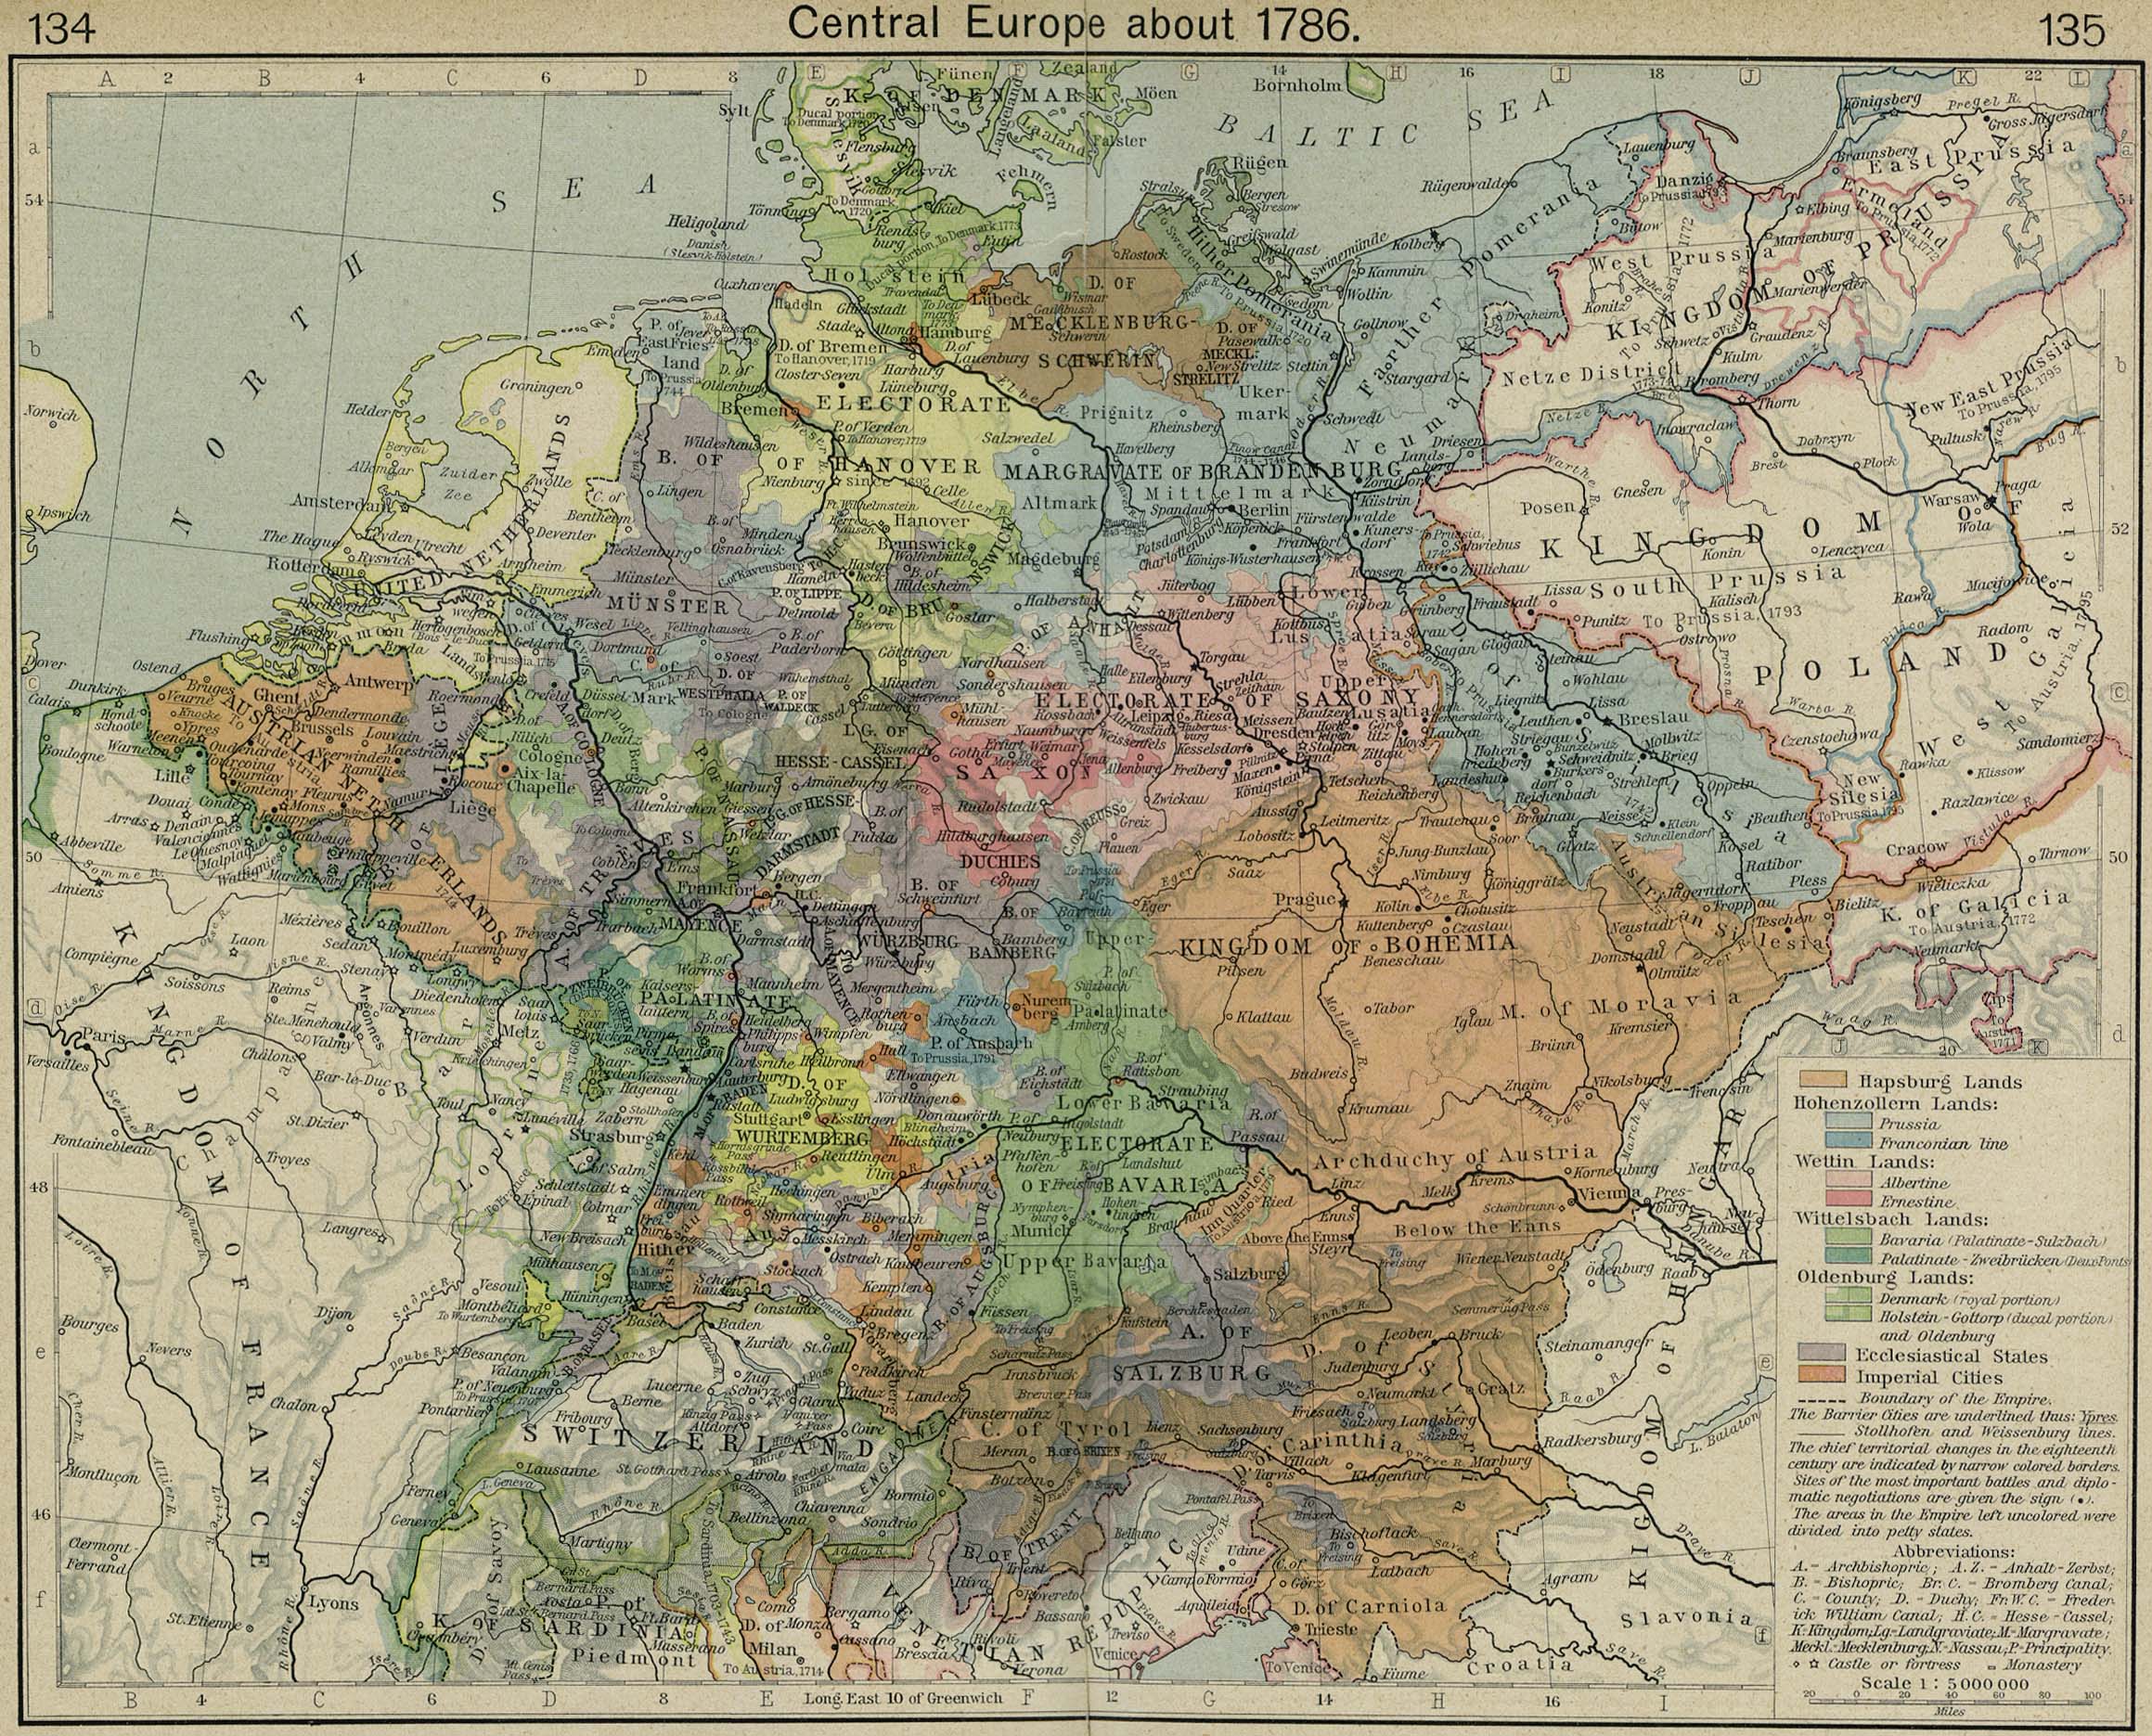 http://www.lib.utexas.edu/maps/historical/shepherd/central_europe_1786.jpg